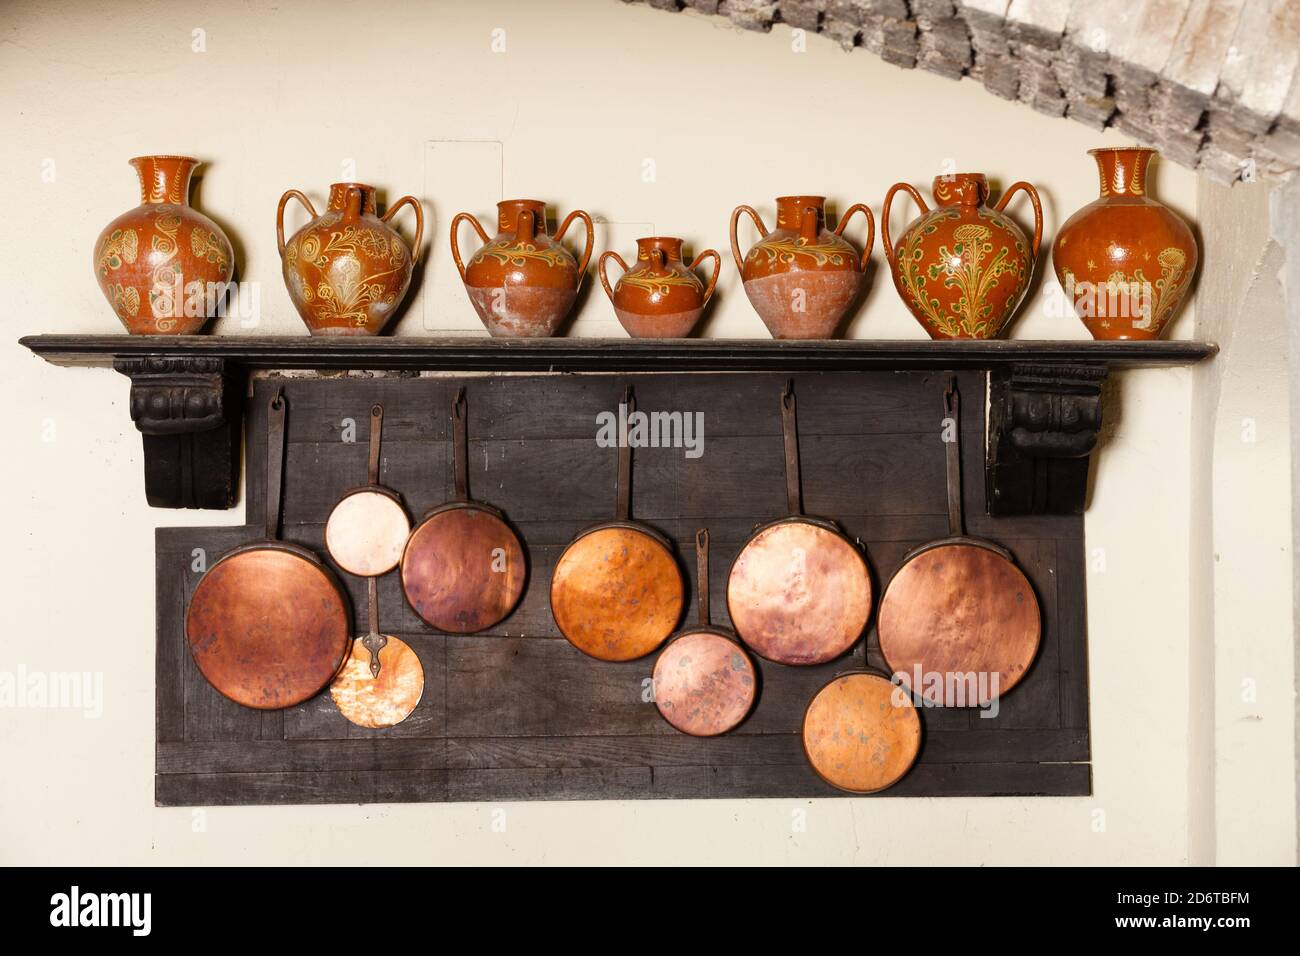 Antike Küchenutensilien. Geschirr, Töpfe und Amphoren. Reihe von hängenden  Töpfen und Gläser Amphora in einer historischen Küche eines Schlosses  Stockfotografie - Alamy